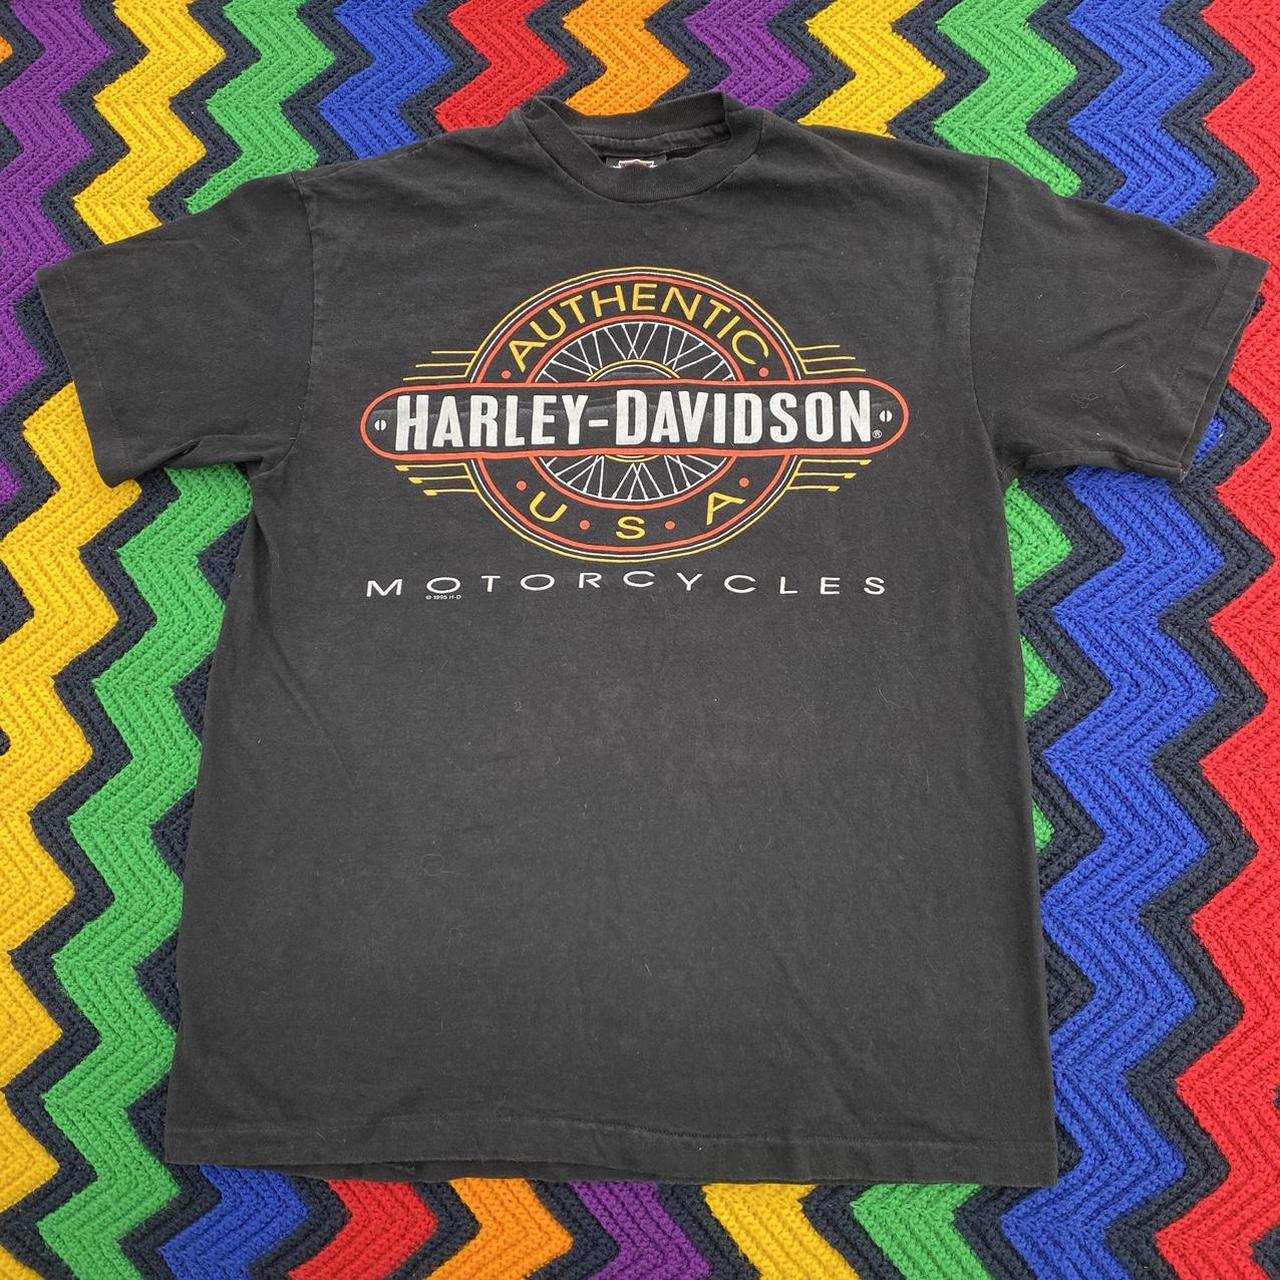 Vintage 90’s Harley Davidson “Los Angeles” Tee •... - Depop